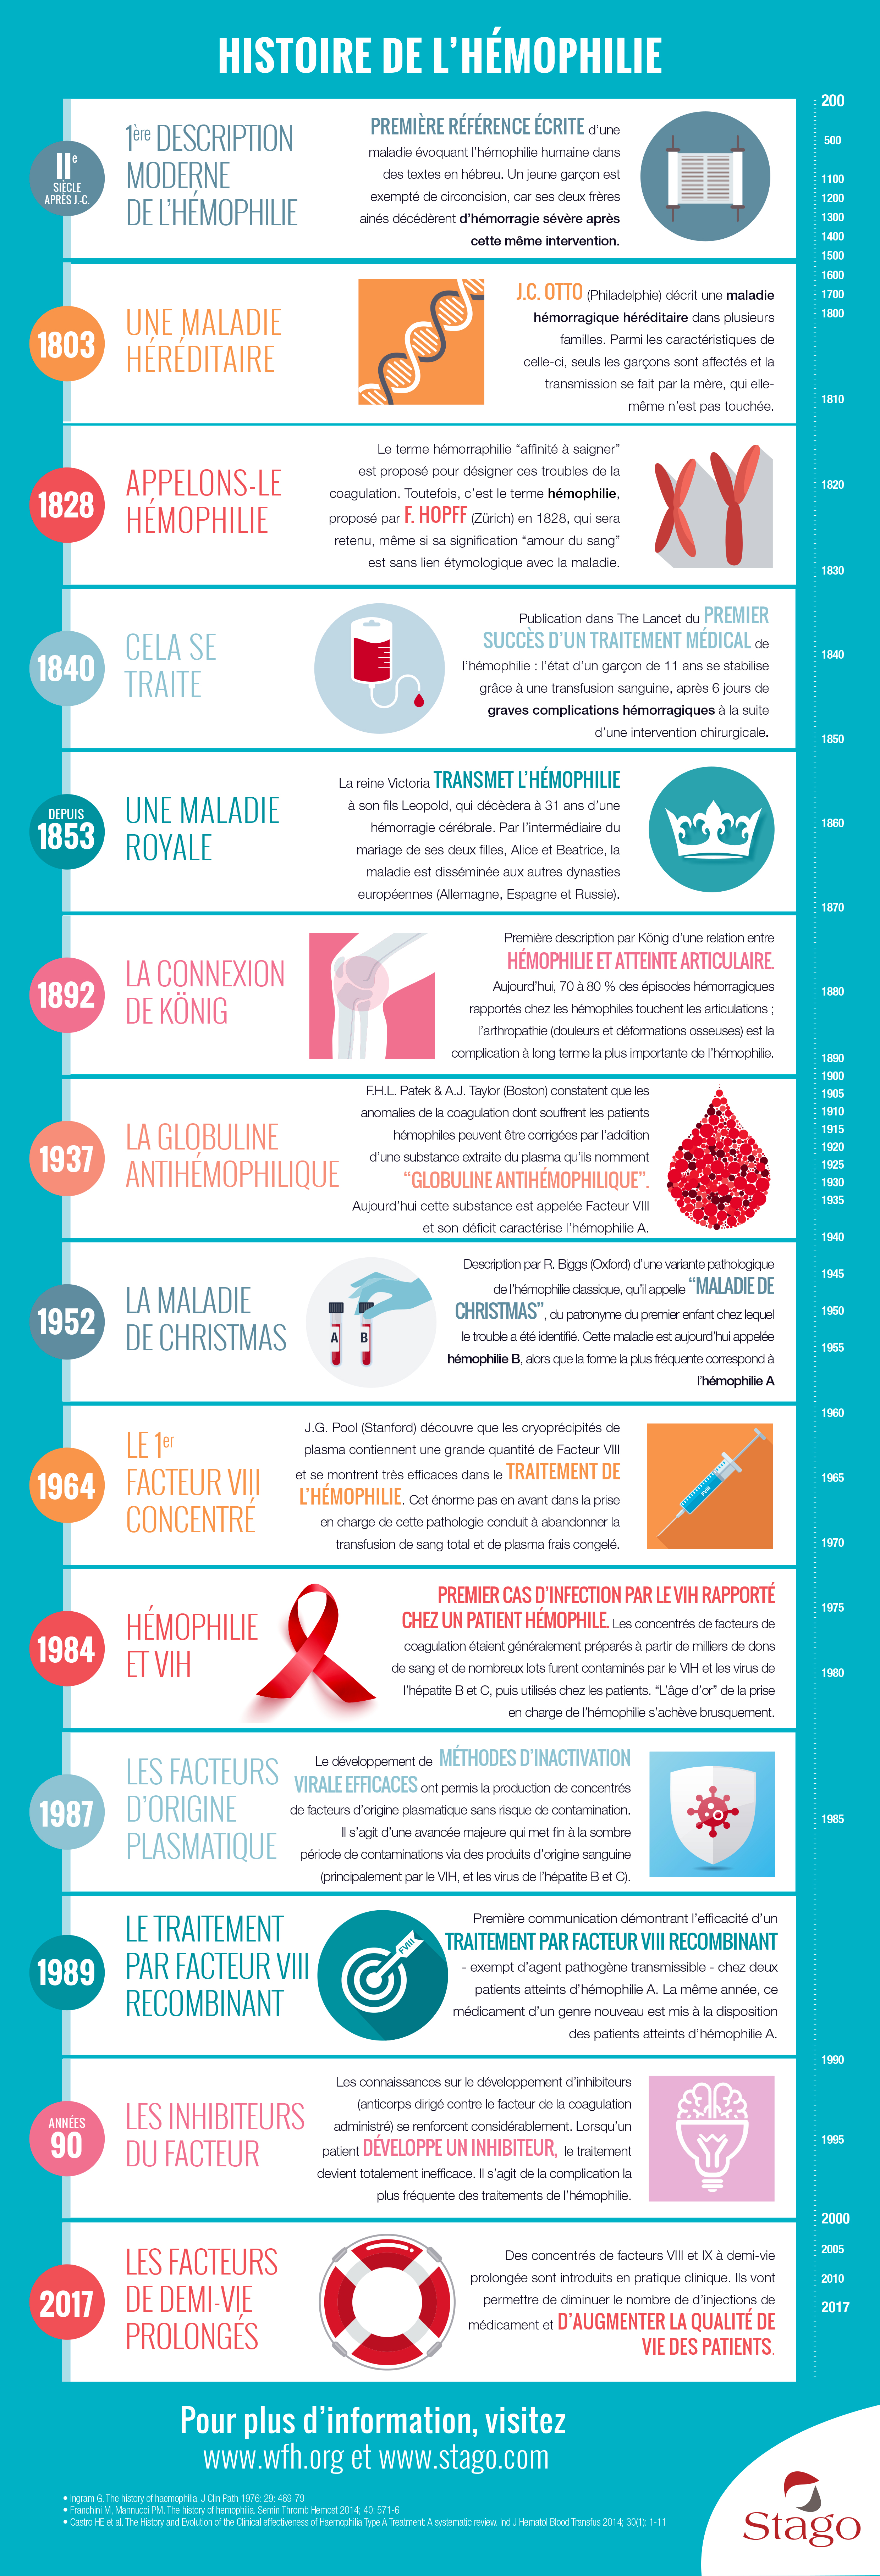 Histoire de l'Hémophilie | Stago